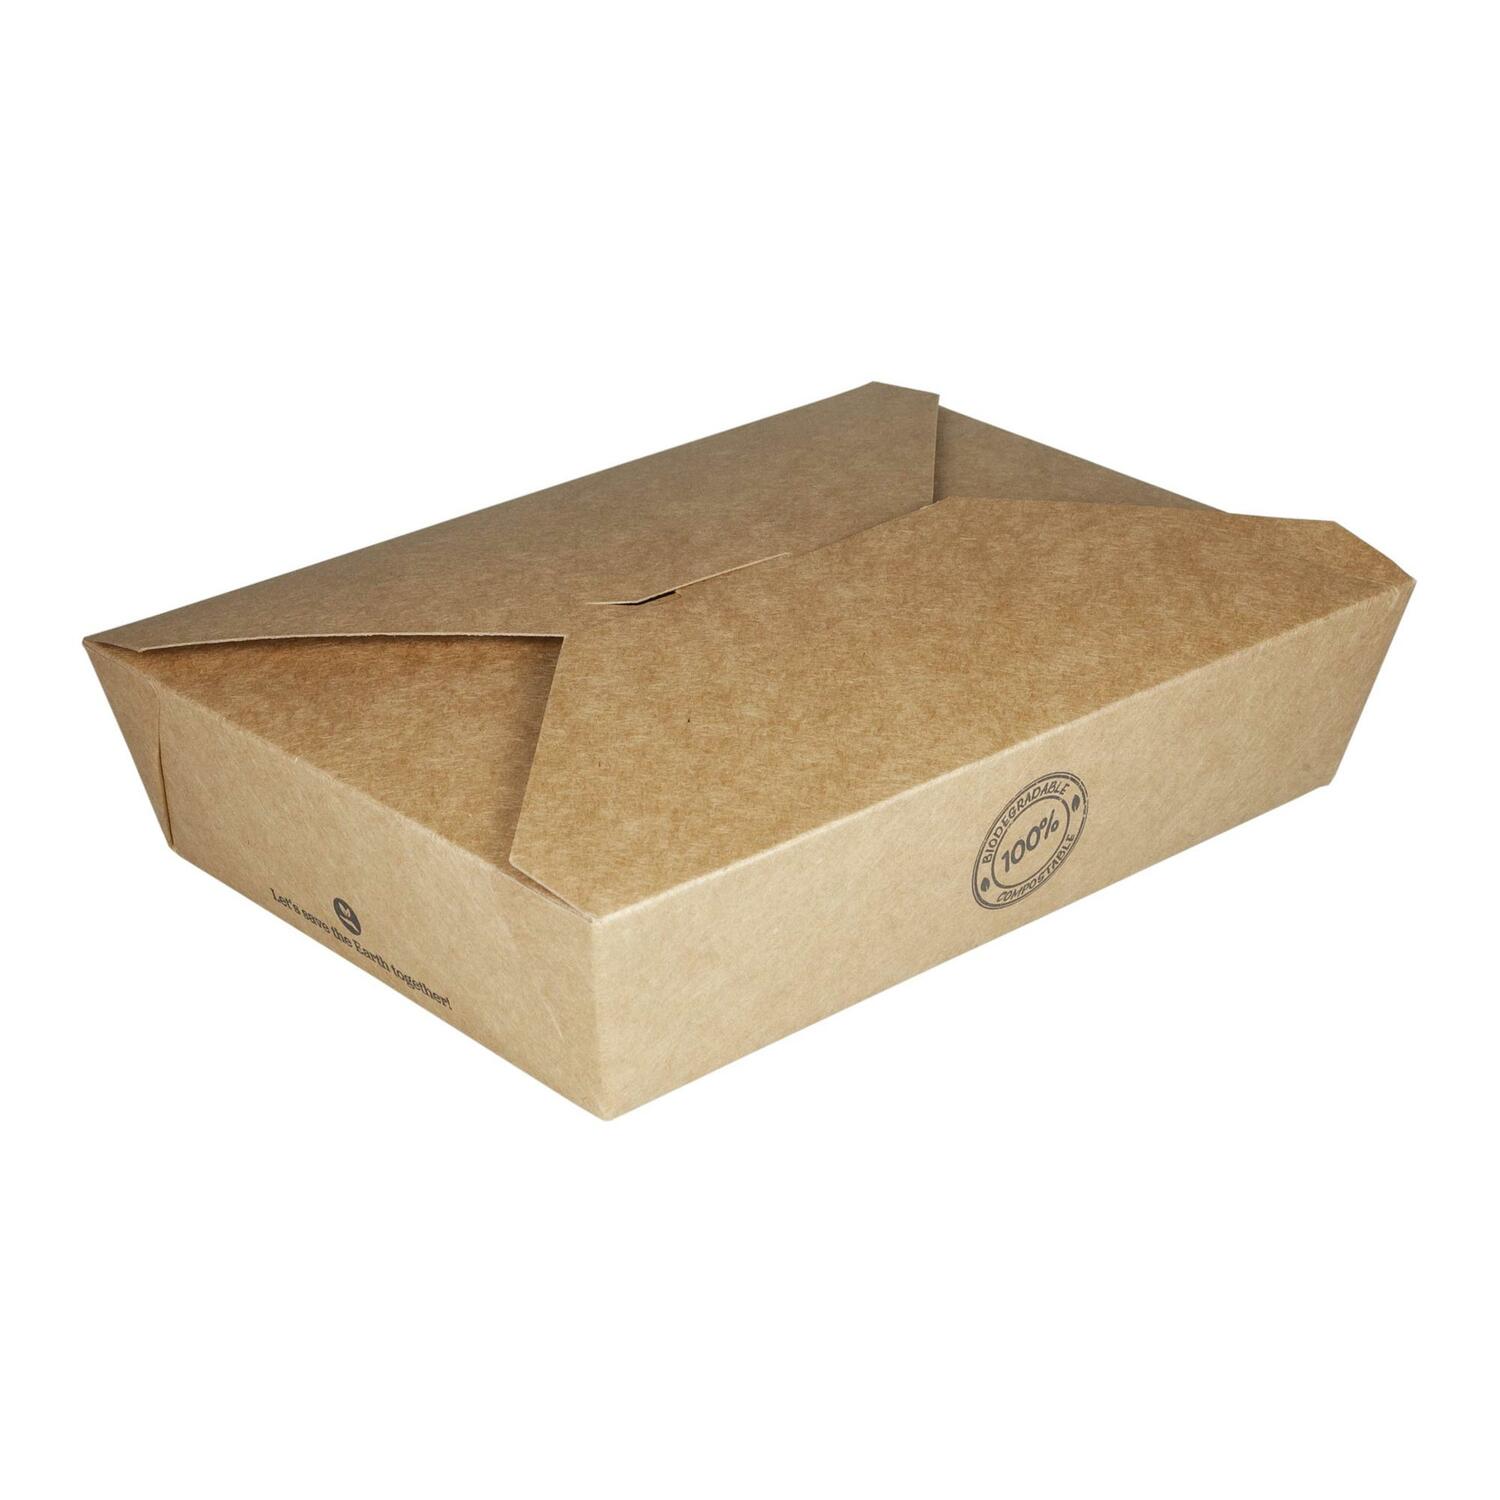 BIO Take-Away Boxen Menboxen ToGo aus Karton, 21.6x16x6.4cm, 25 Stk.